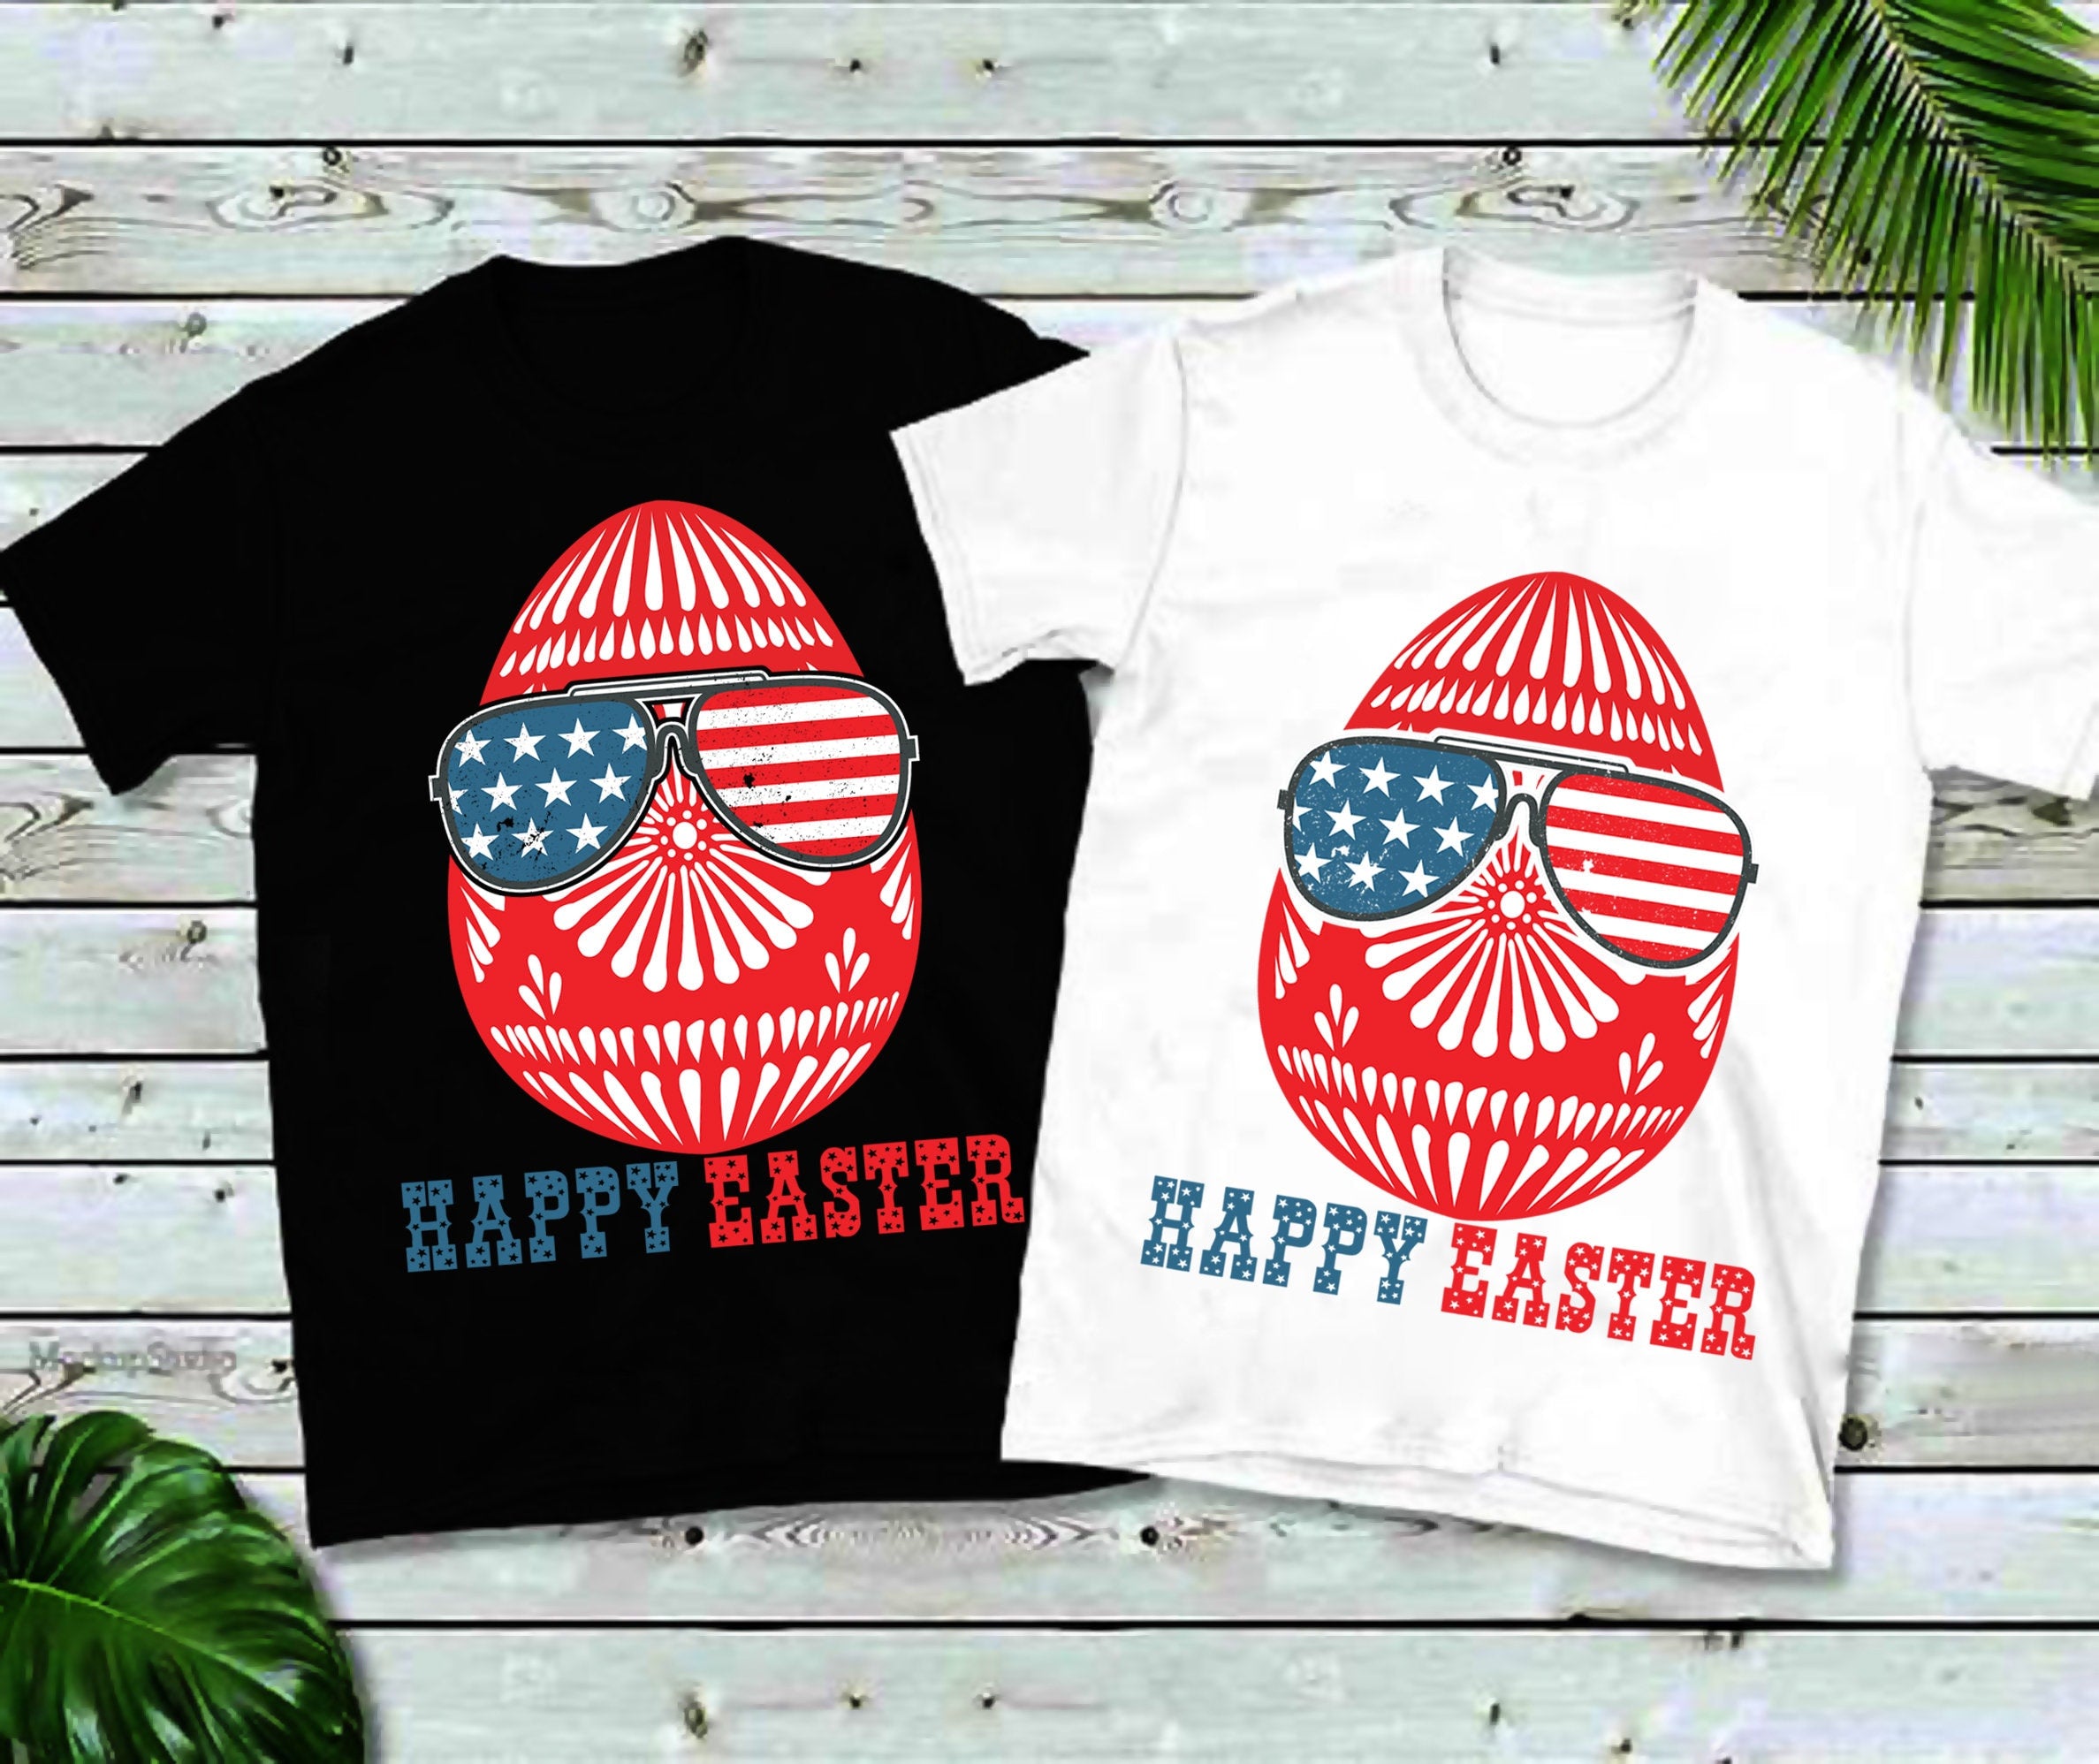 Срећан Ускрс, мајице са америчком заставом, мајица срећног Ускрса, мајица са зеком, кошуља са наочарима за сунце, кошуља за ускршње јаје, амерички срећан Ускрс - плусминусцо.цом